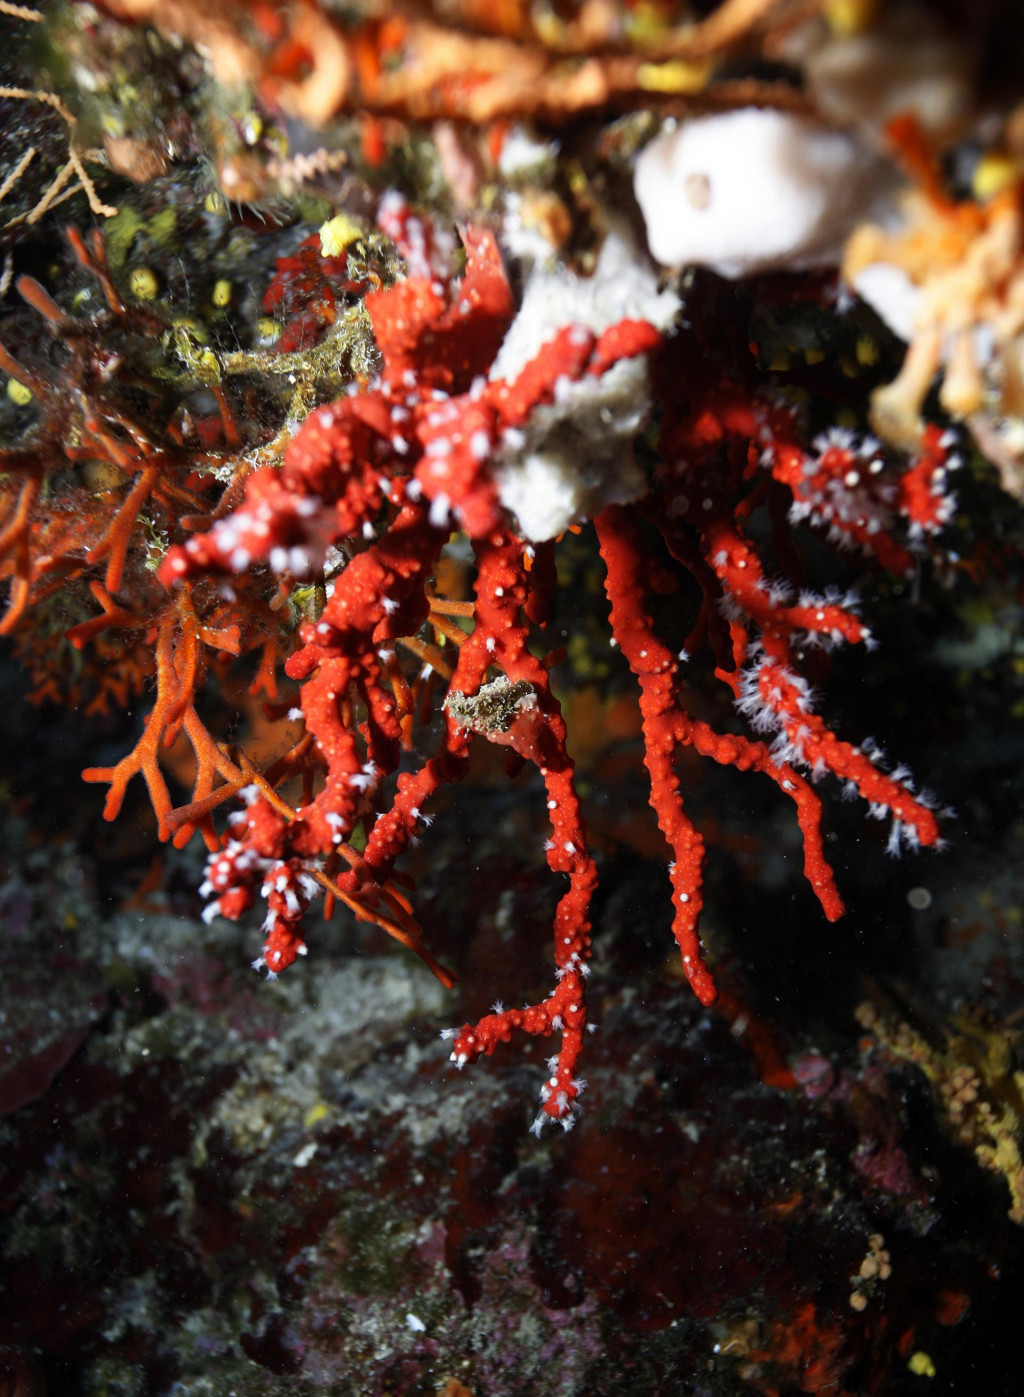 Crveni koralj